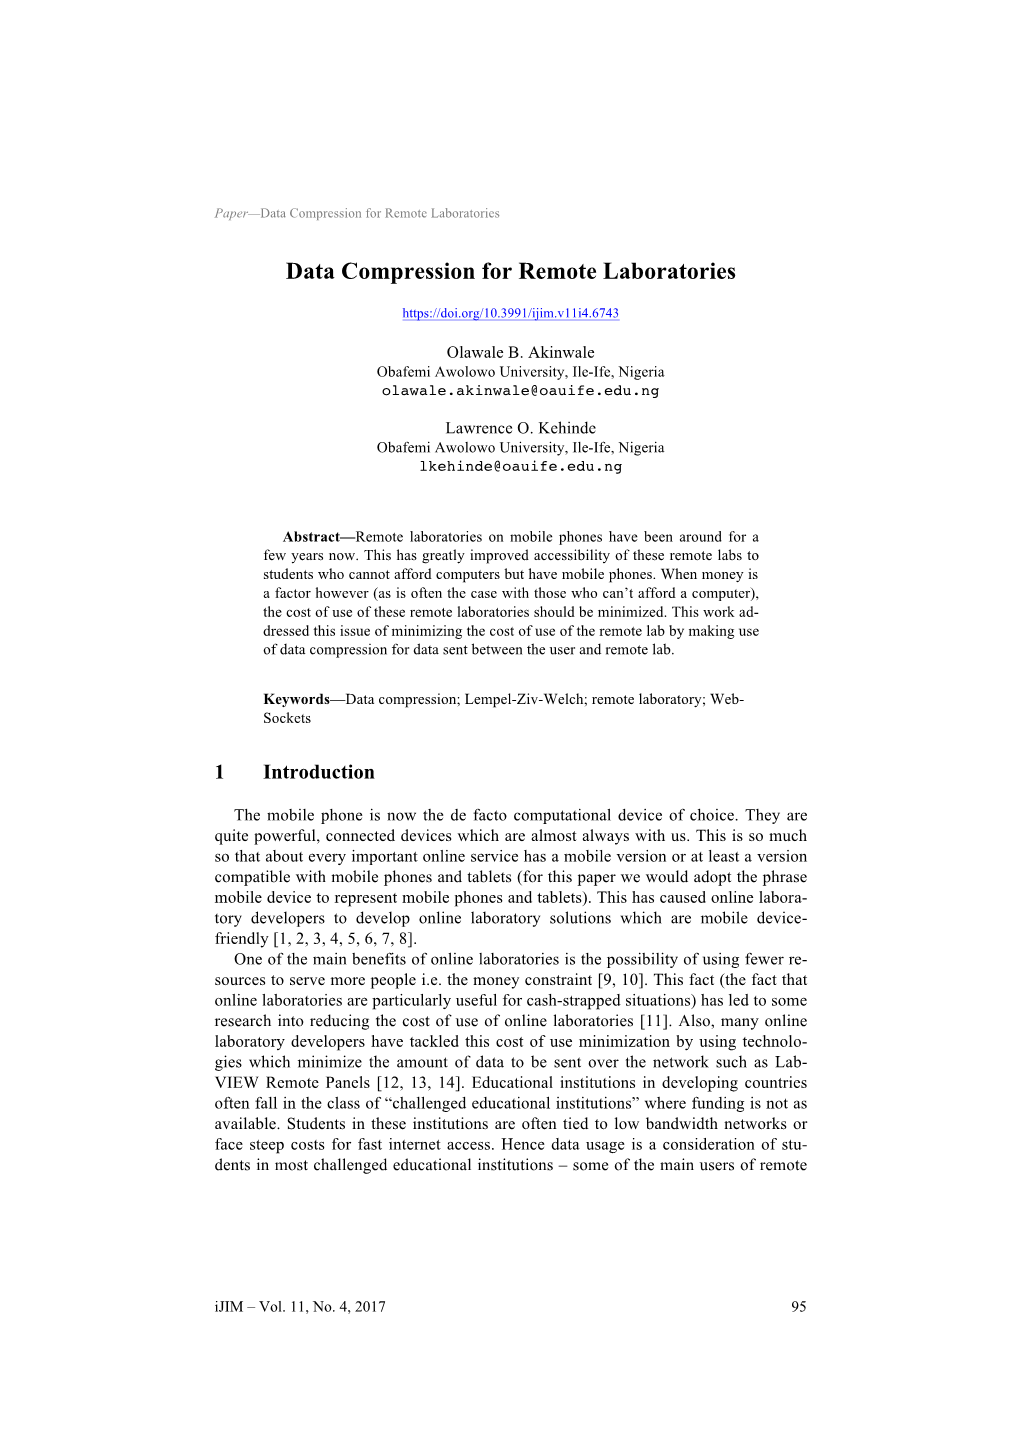 Data Compression for Remote Laboratories